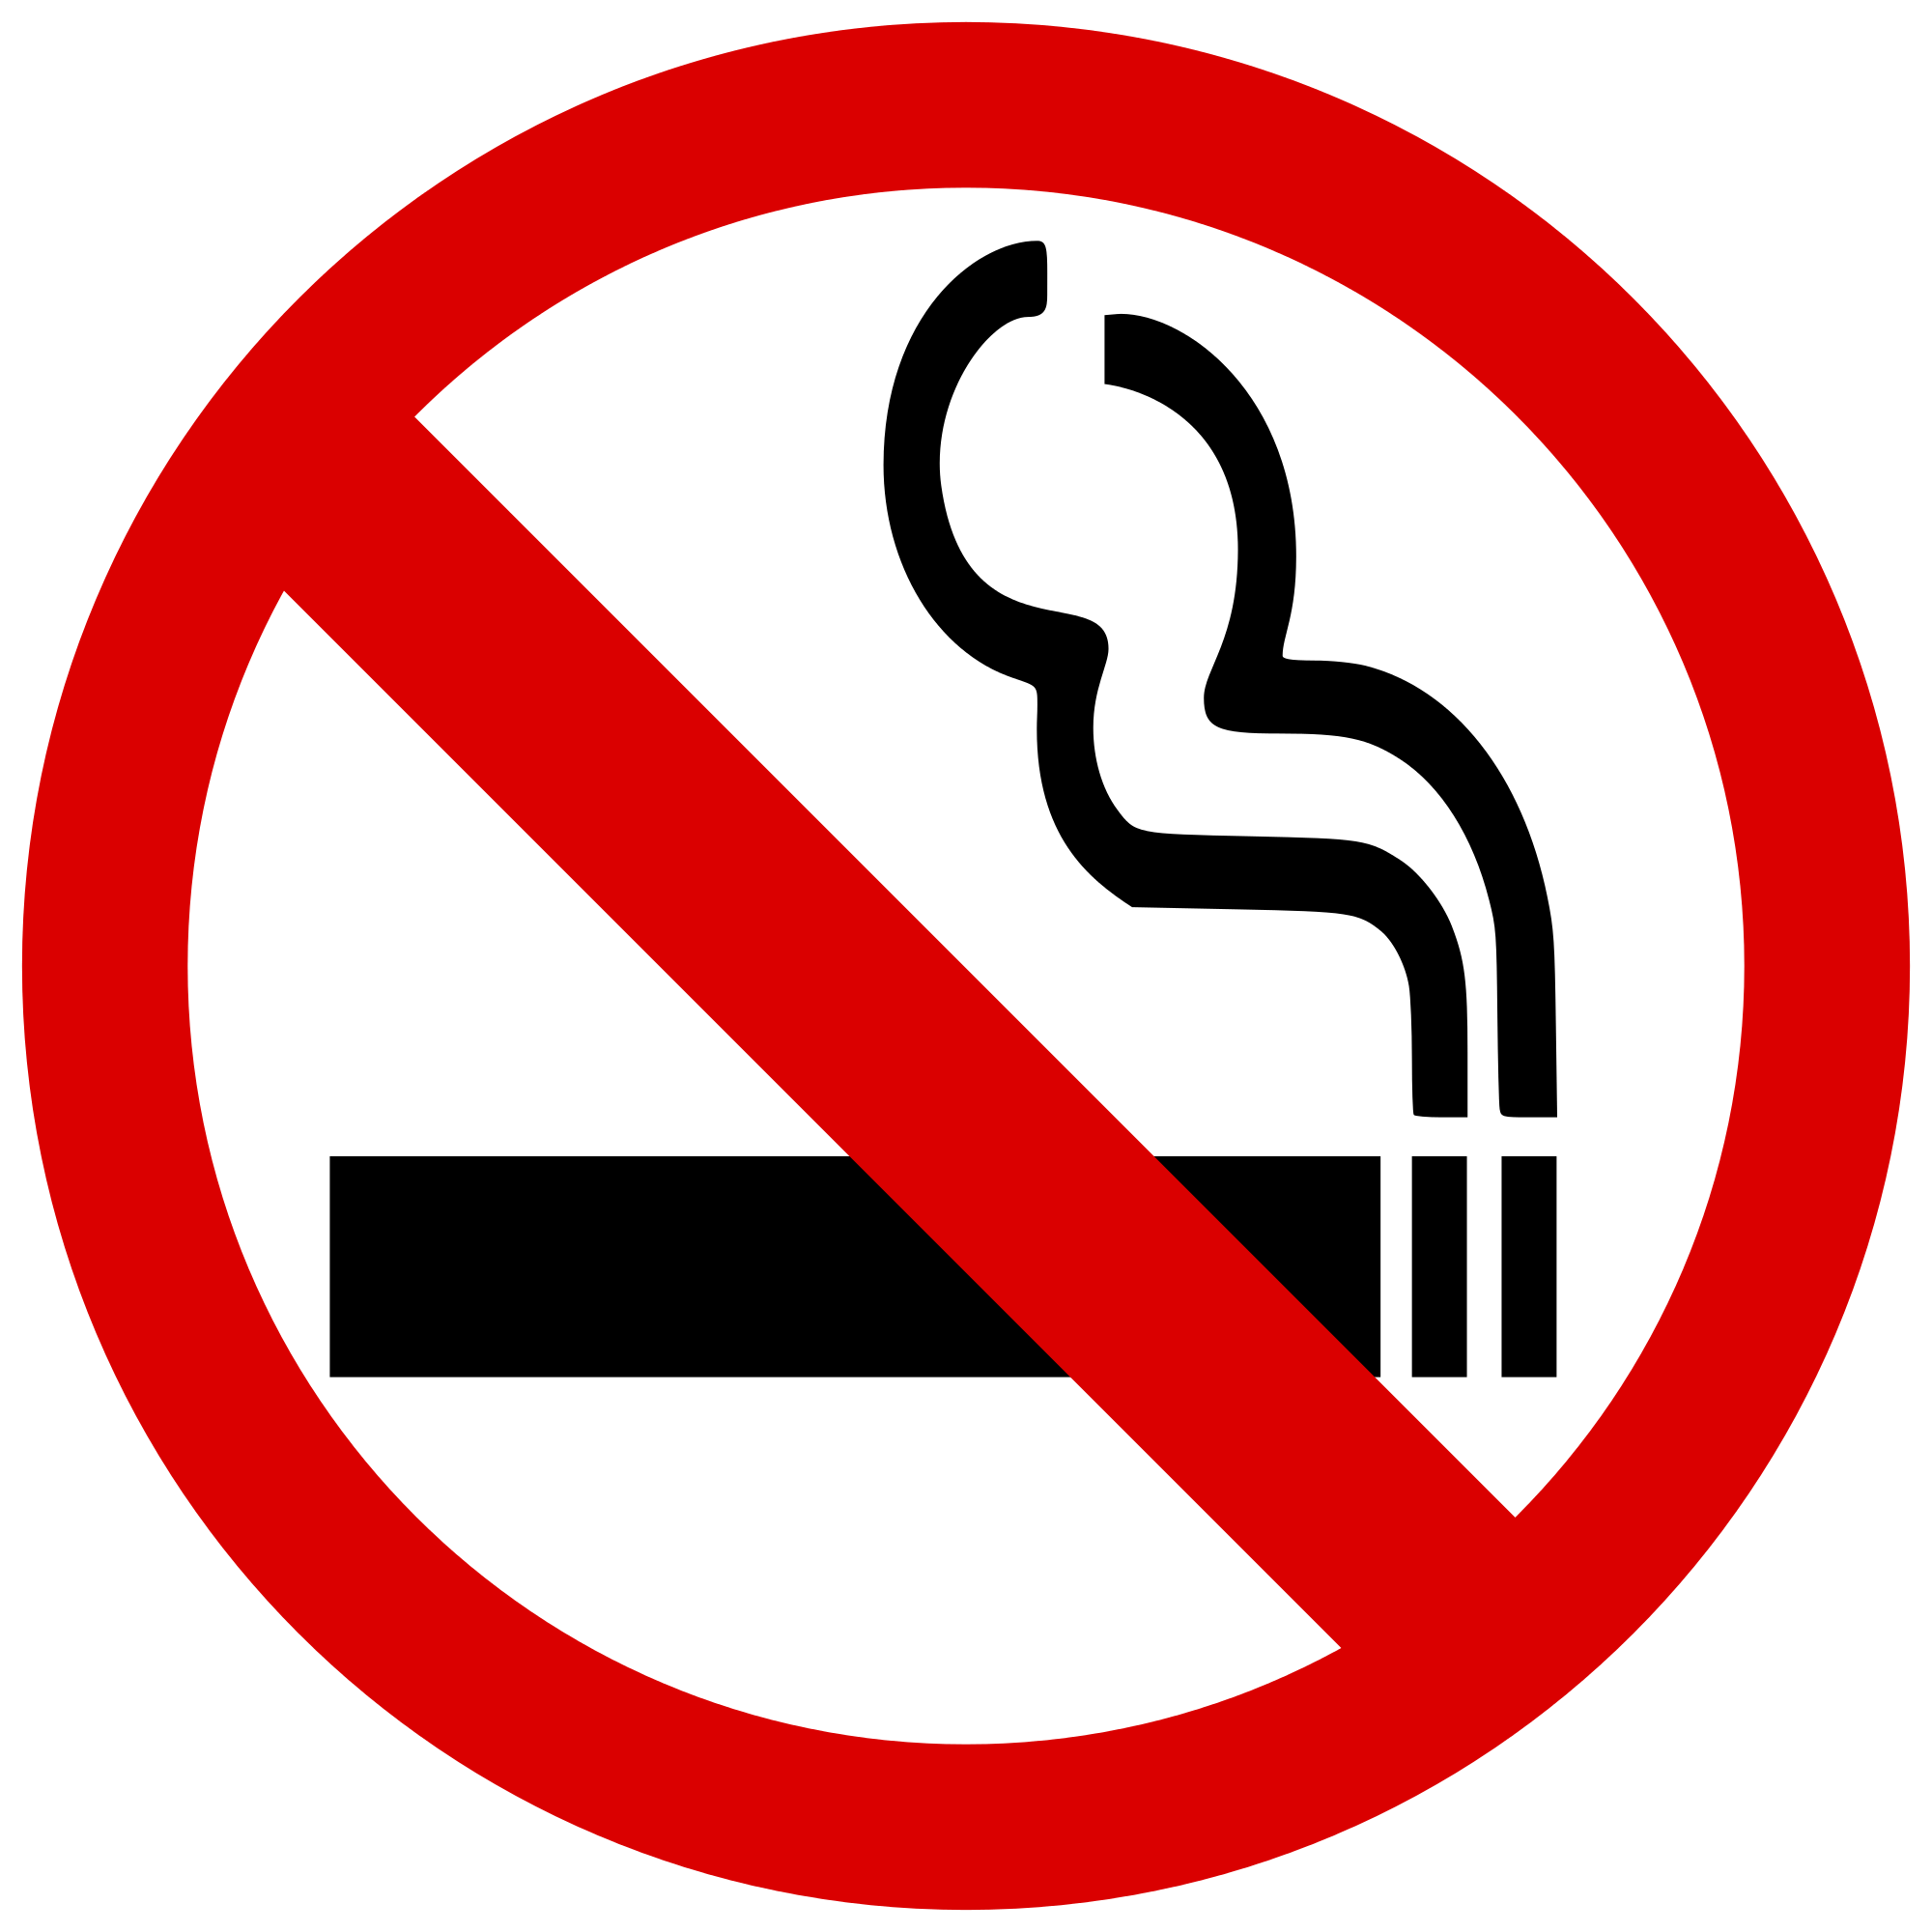 Red Smoke Logo - No smoking symbol.svg